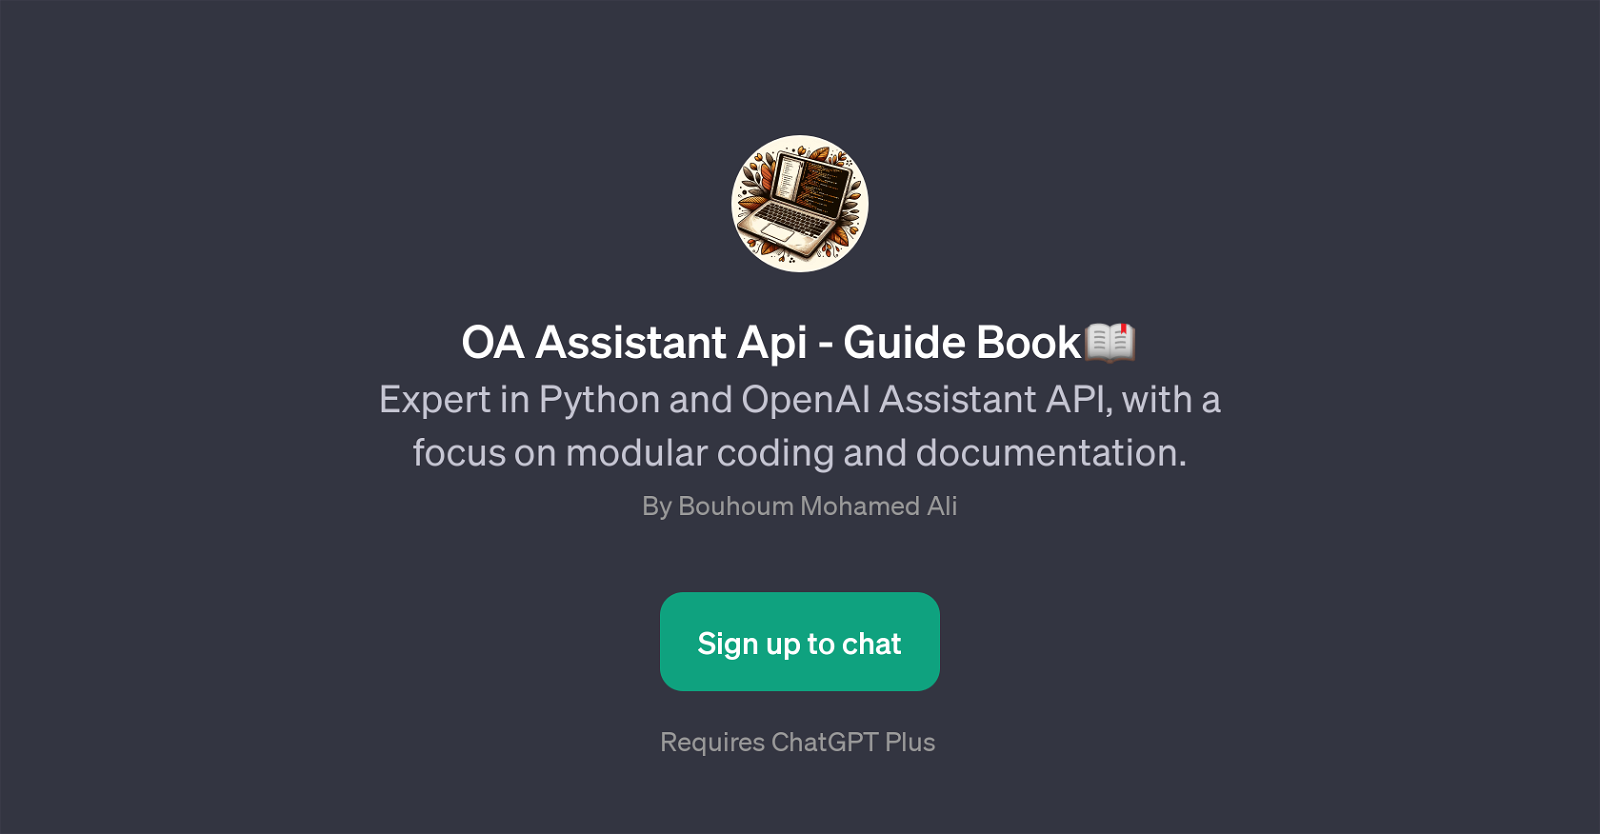 OA Assistant Api - Guide Book website